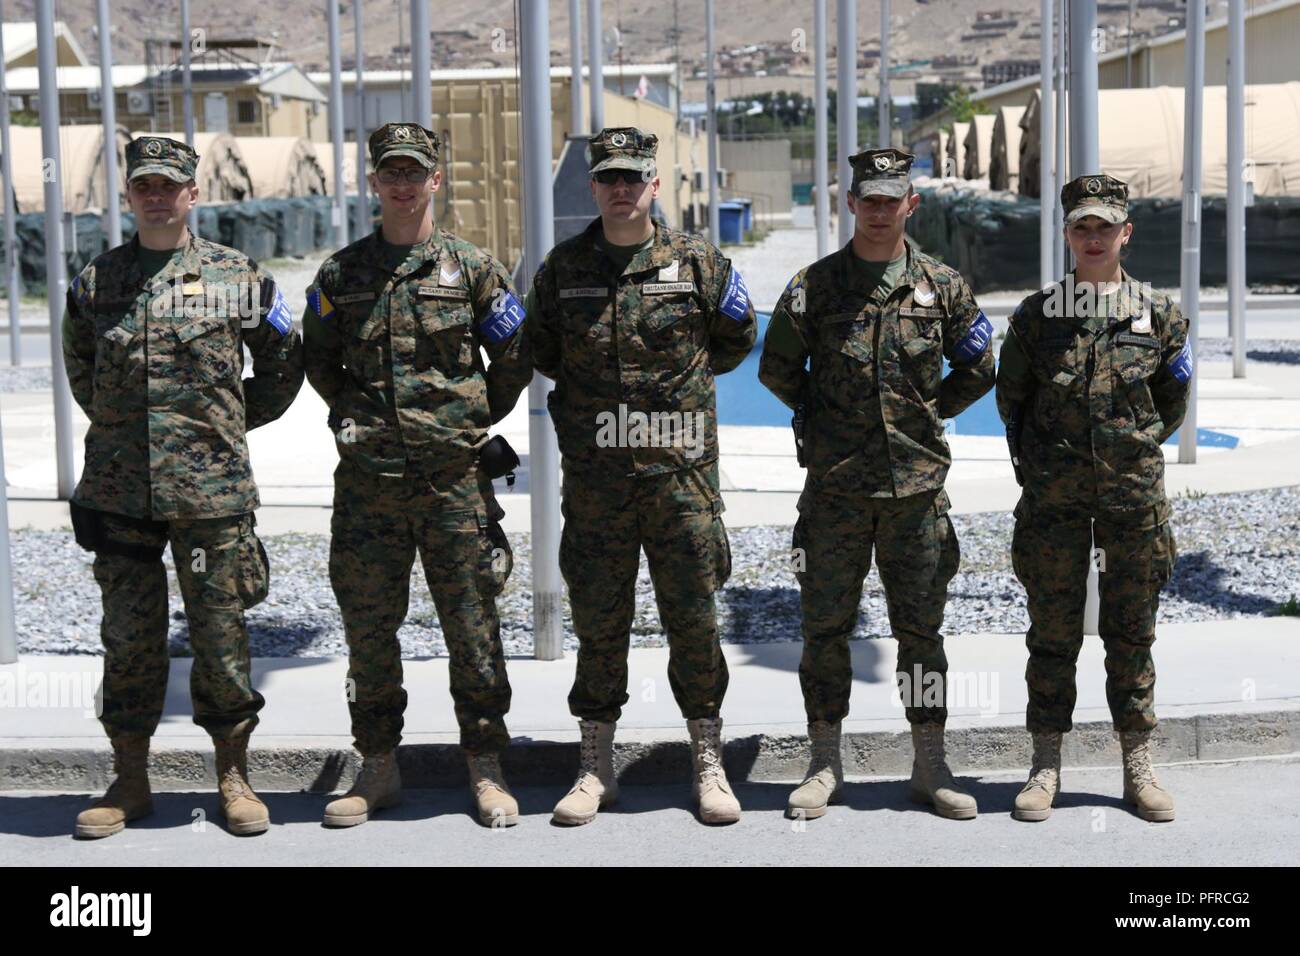 KABUL, Afghanistan (27 Mai 2018) - Internationale militärische Polizei von Bosnien und Herzegowina posieren für ein Gruppenfoto an Hamid Karzai International Airport, 27. Mai 2018. Bosnien und Herzegowina sind eine von 39 Nationen, die eine wesentliche Rolle in der NATO-Play-LED der entschlossenen Unterstützung der Mission. (Der entschlossenen Unterstützung Stockfoto